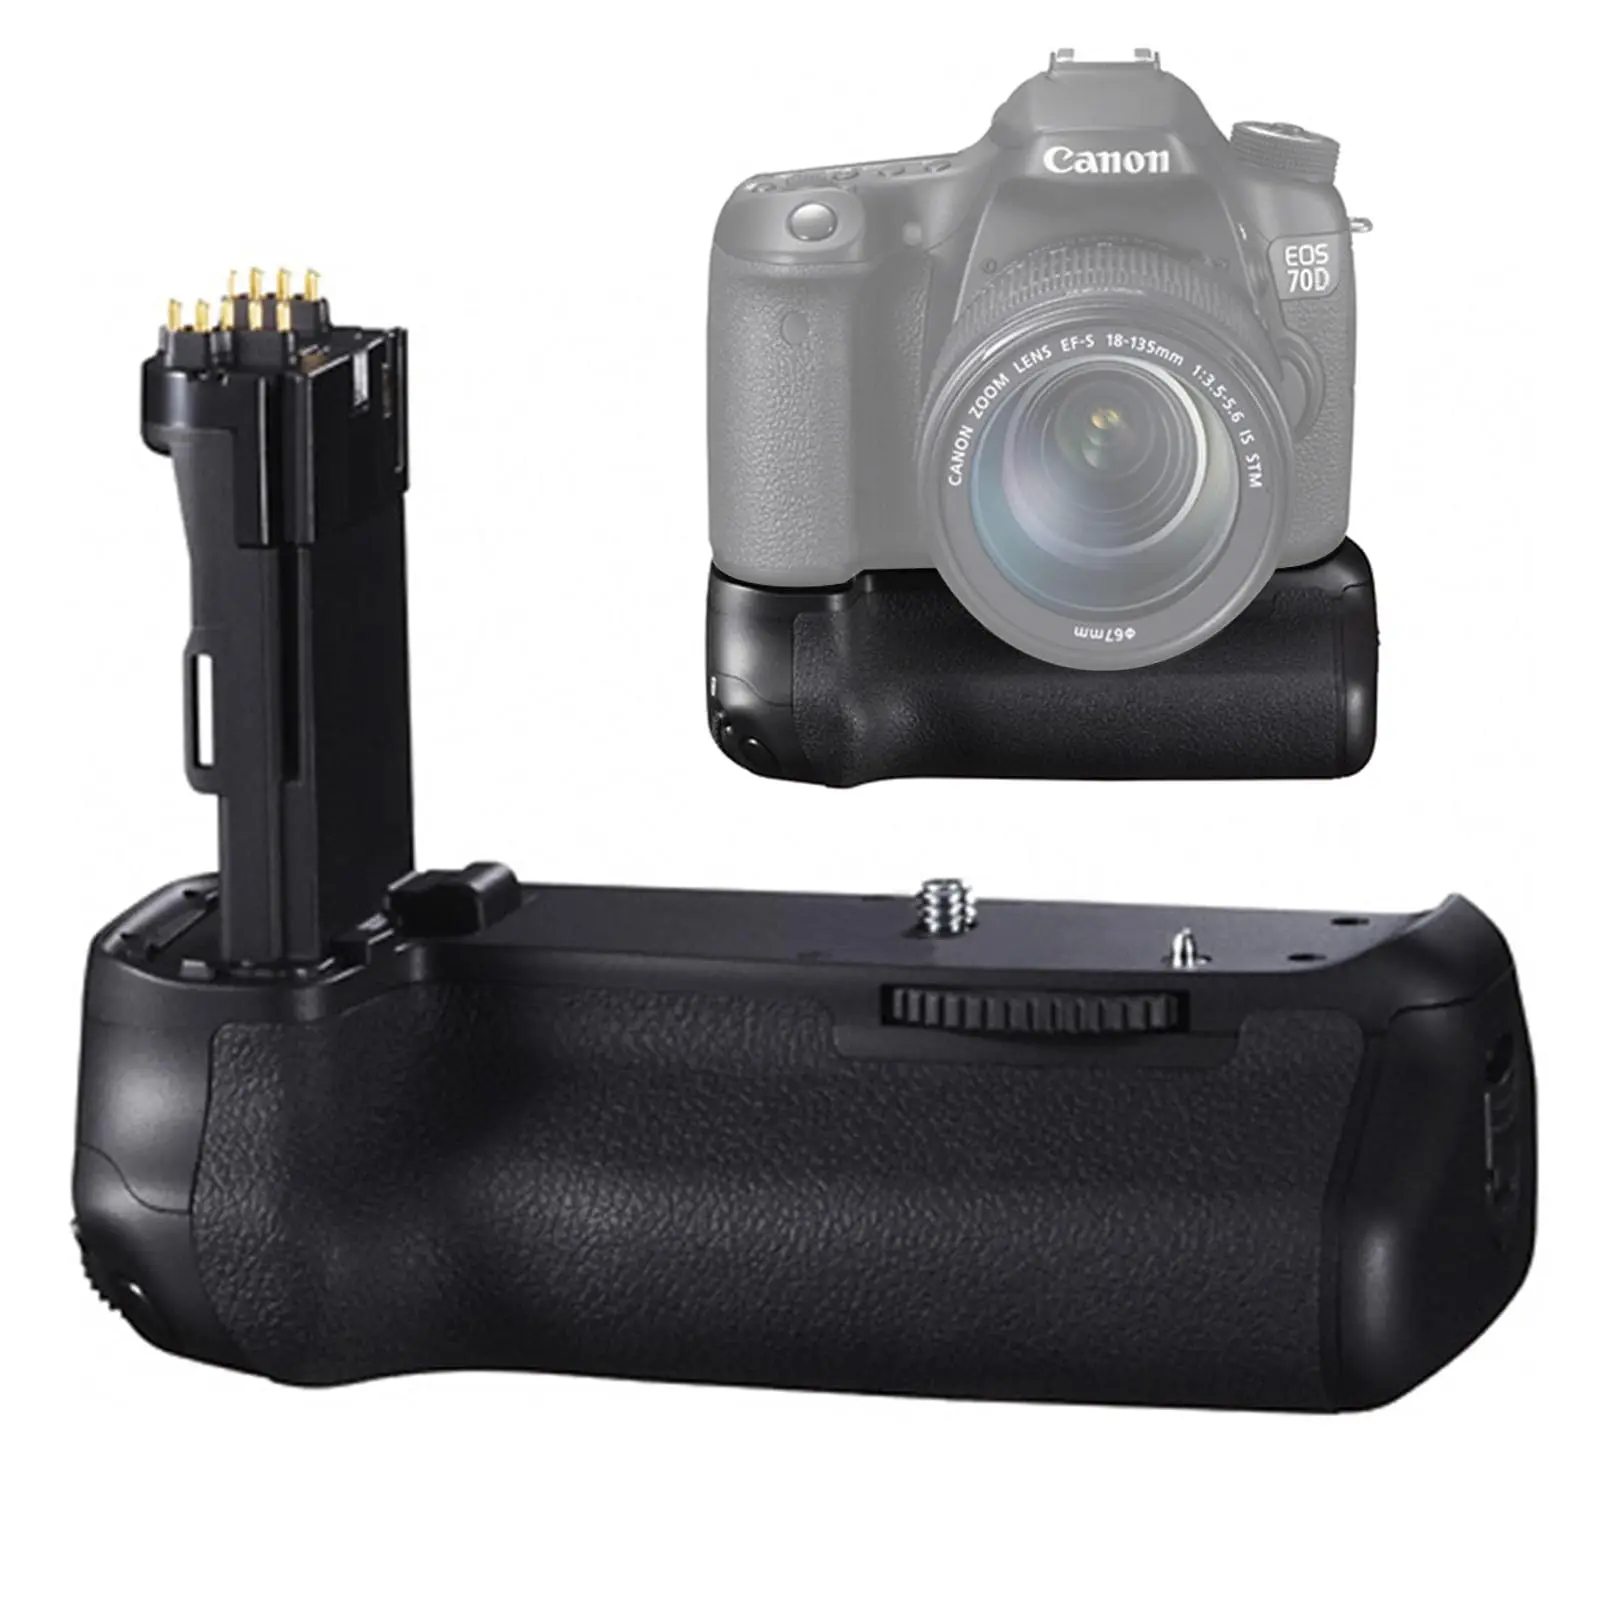 キヤノンDSLRカメラ用バッテリーグリップ、eos 70dおよび80dの交換、BG-E14